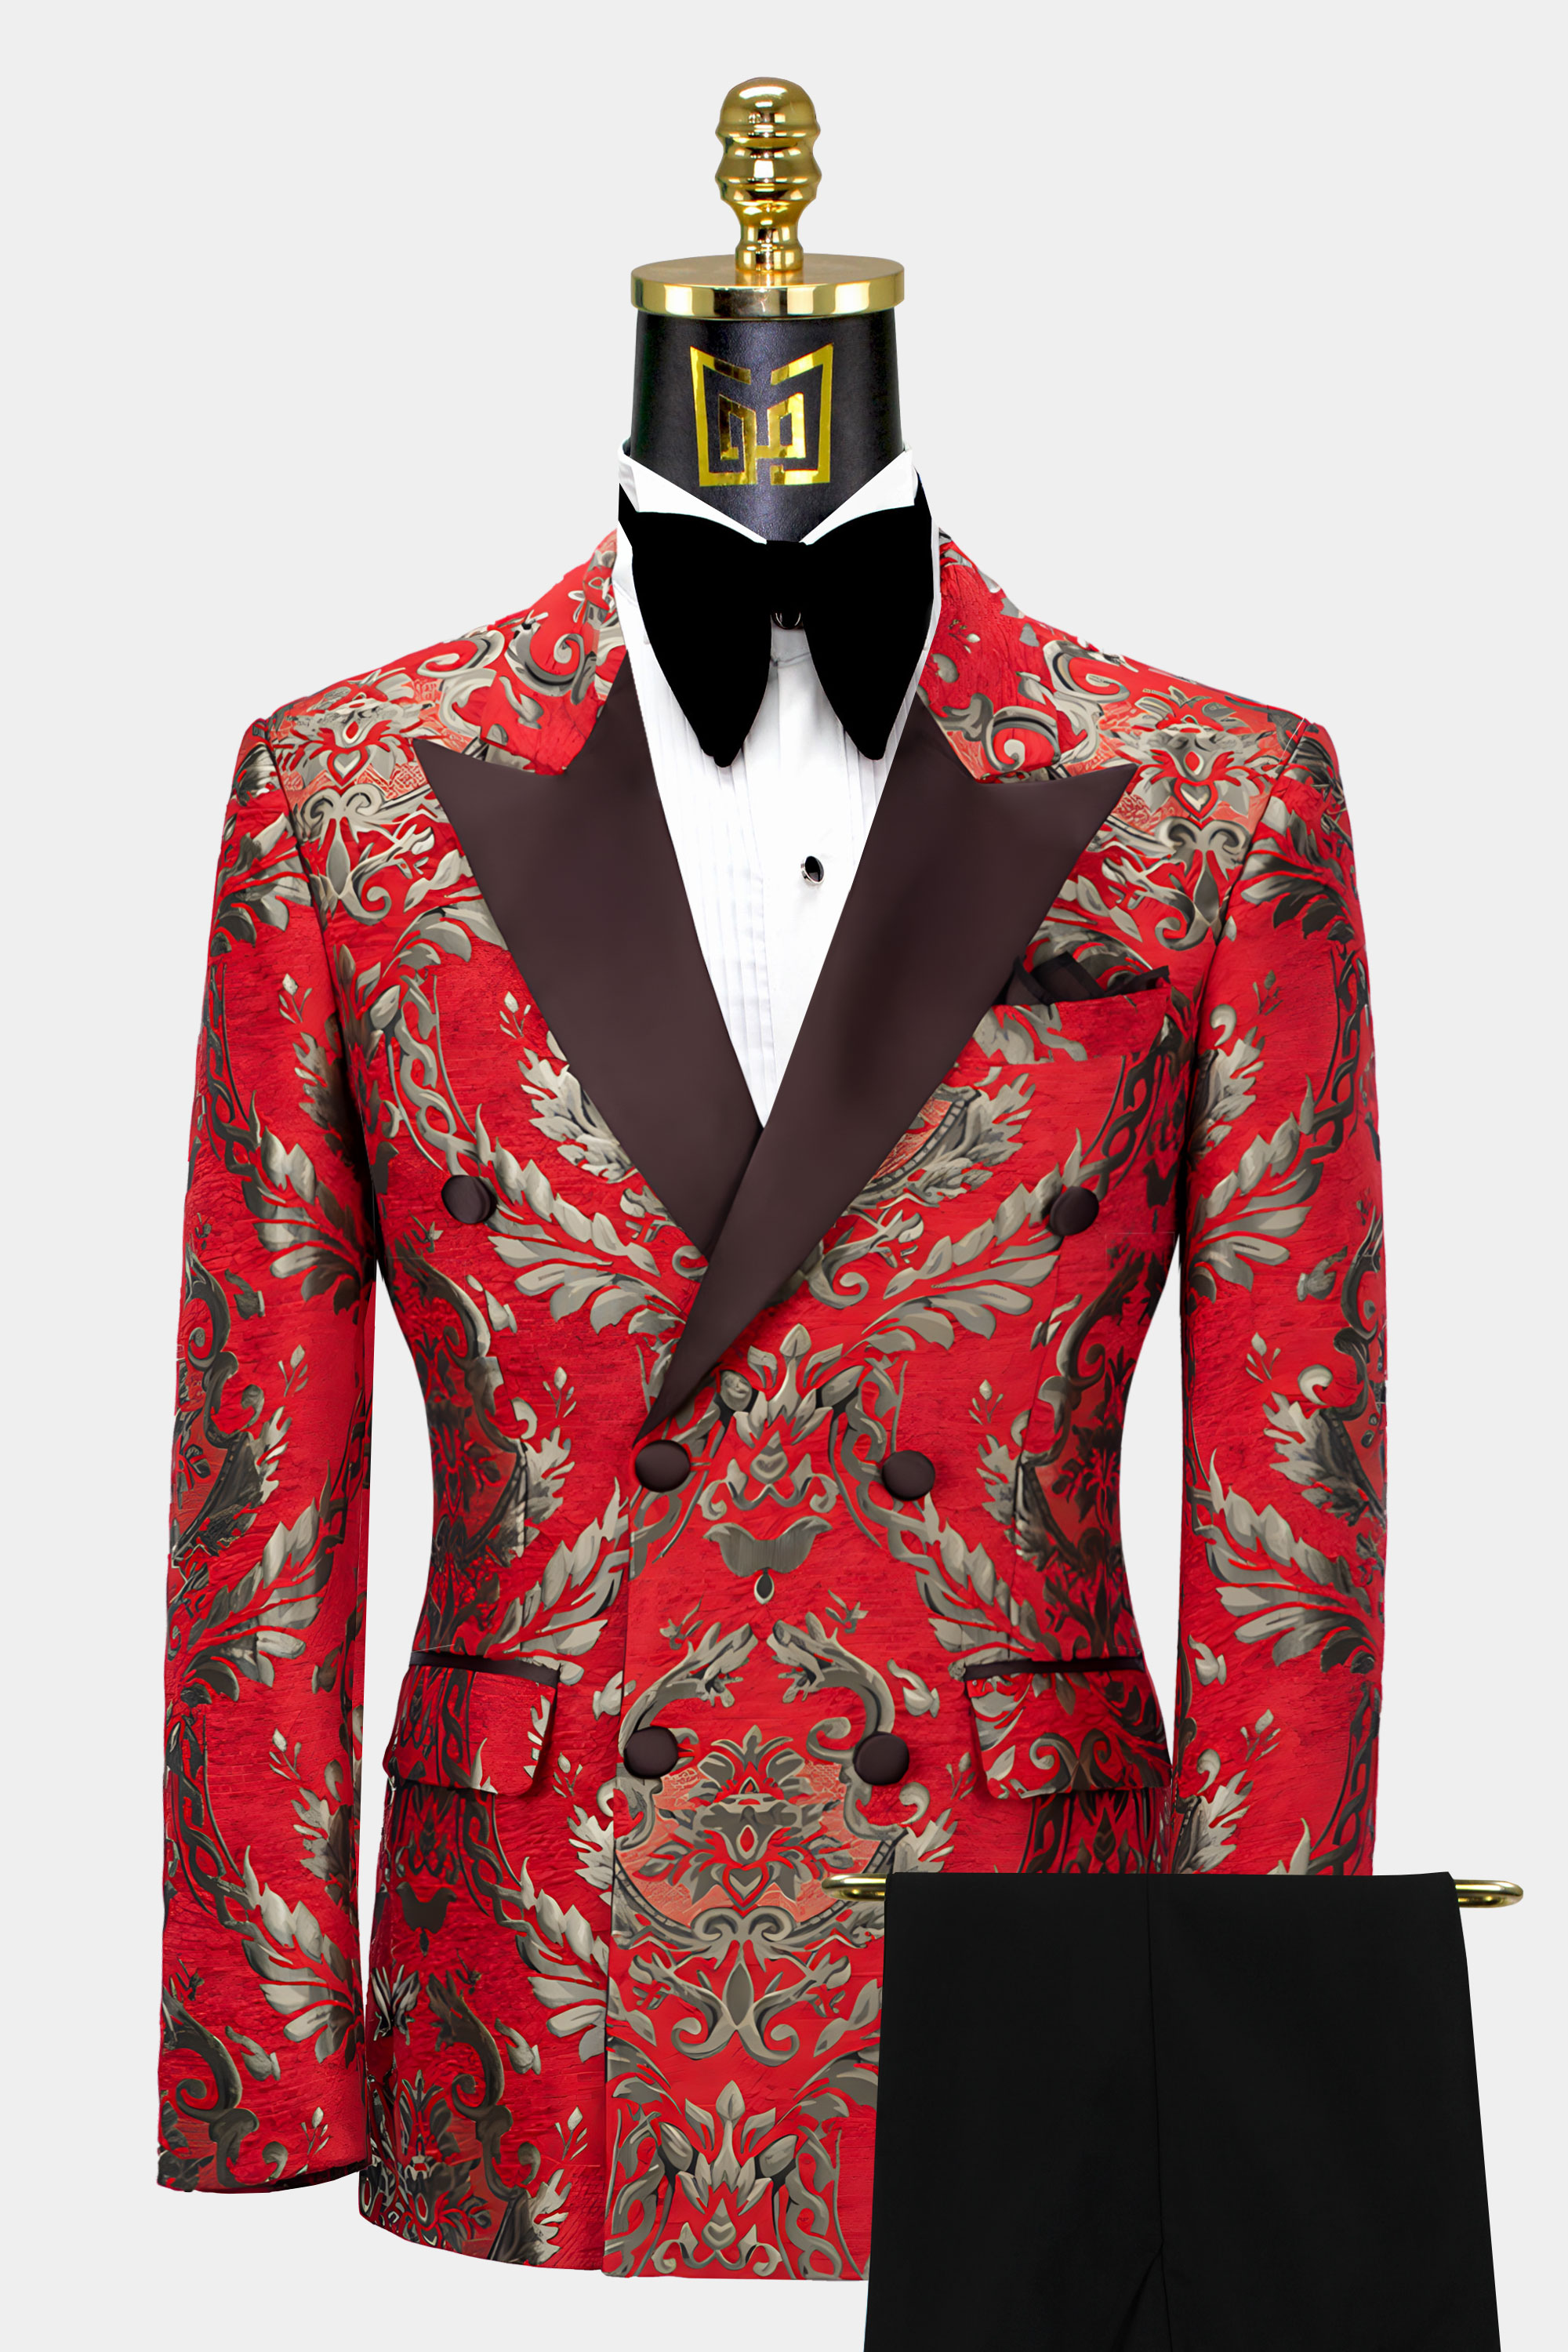 Gold and Red Tuxedo - 3 Piece | Gentleman's Guru